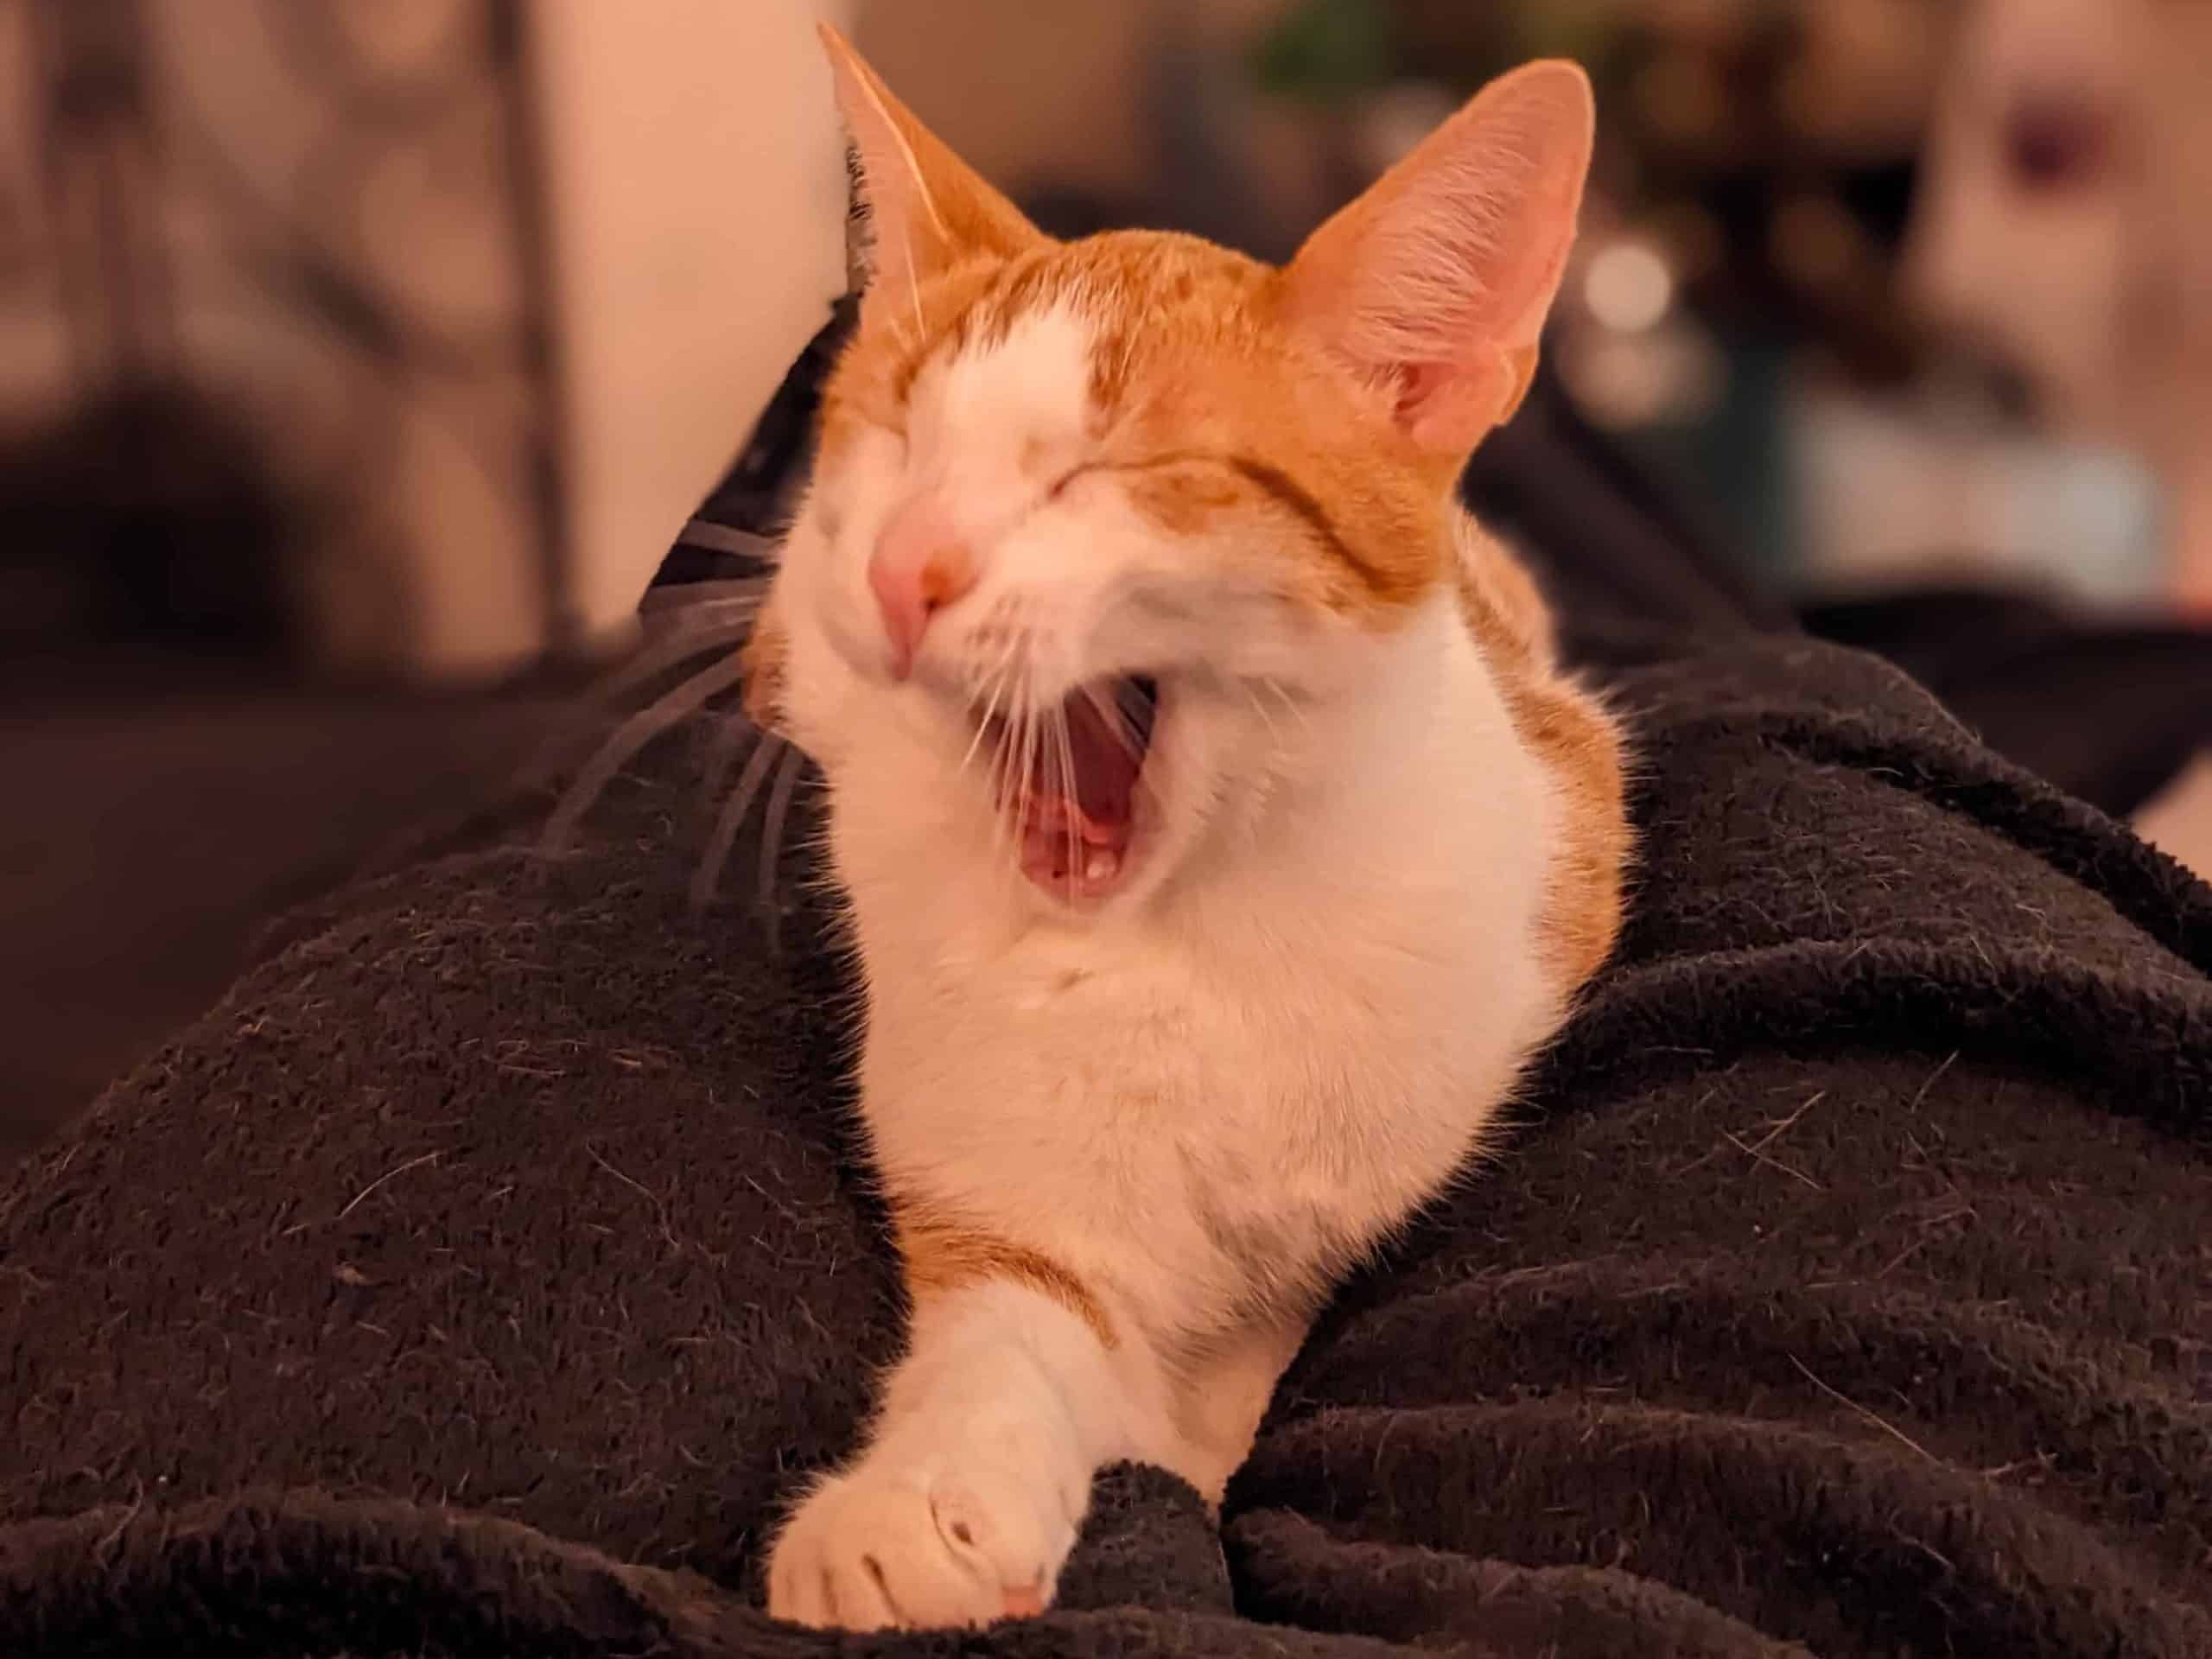 Yawning Orange and White Cat on fuzzy blanket